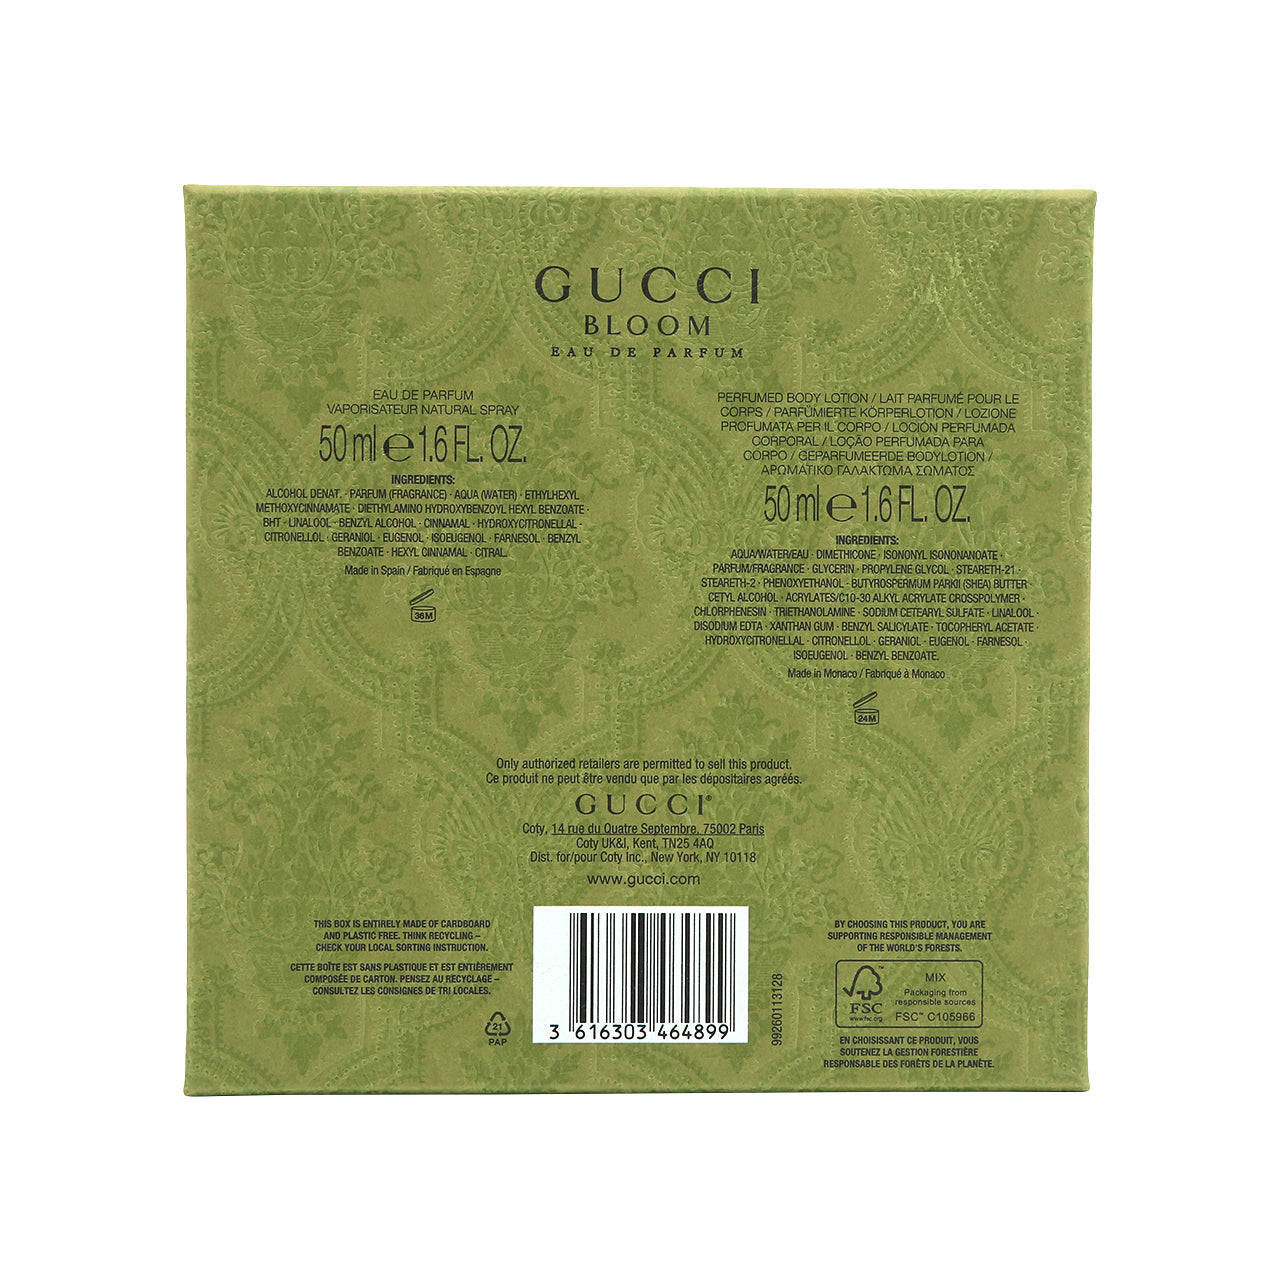 Gucci Bloom Gift Set 2pcs